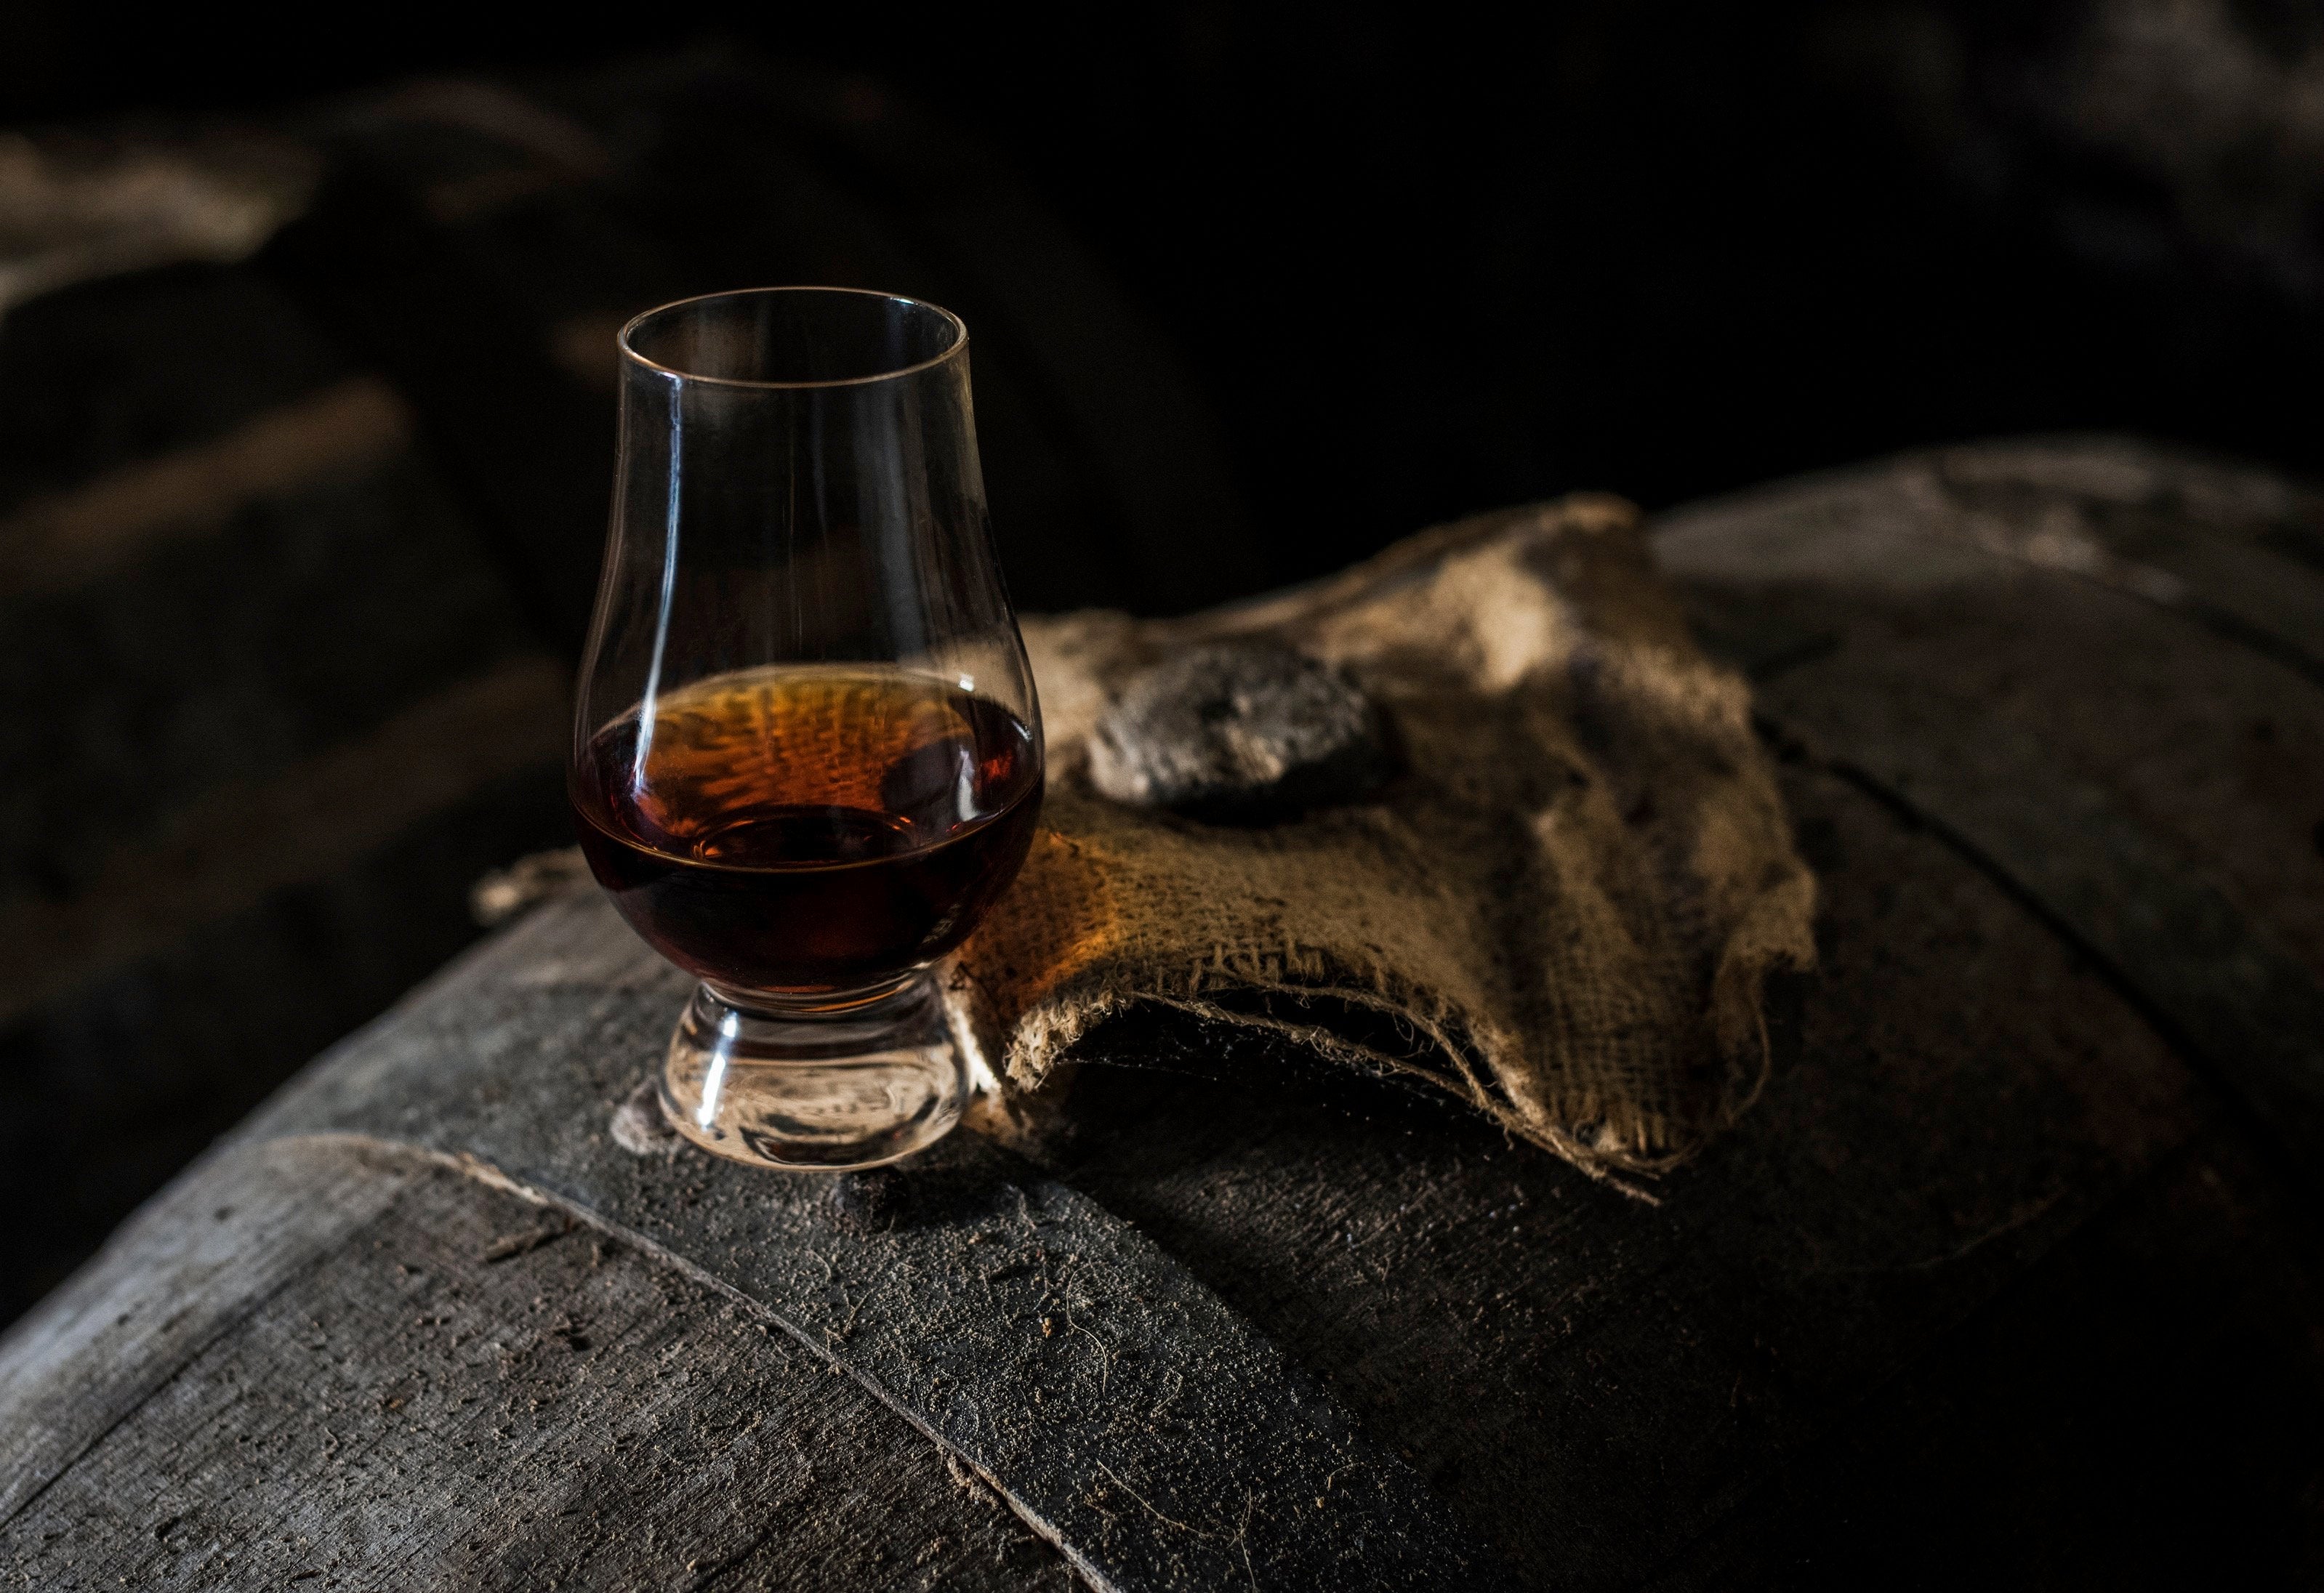 dram whisky in a glencairn glass